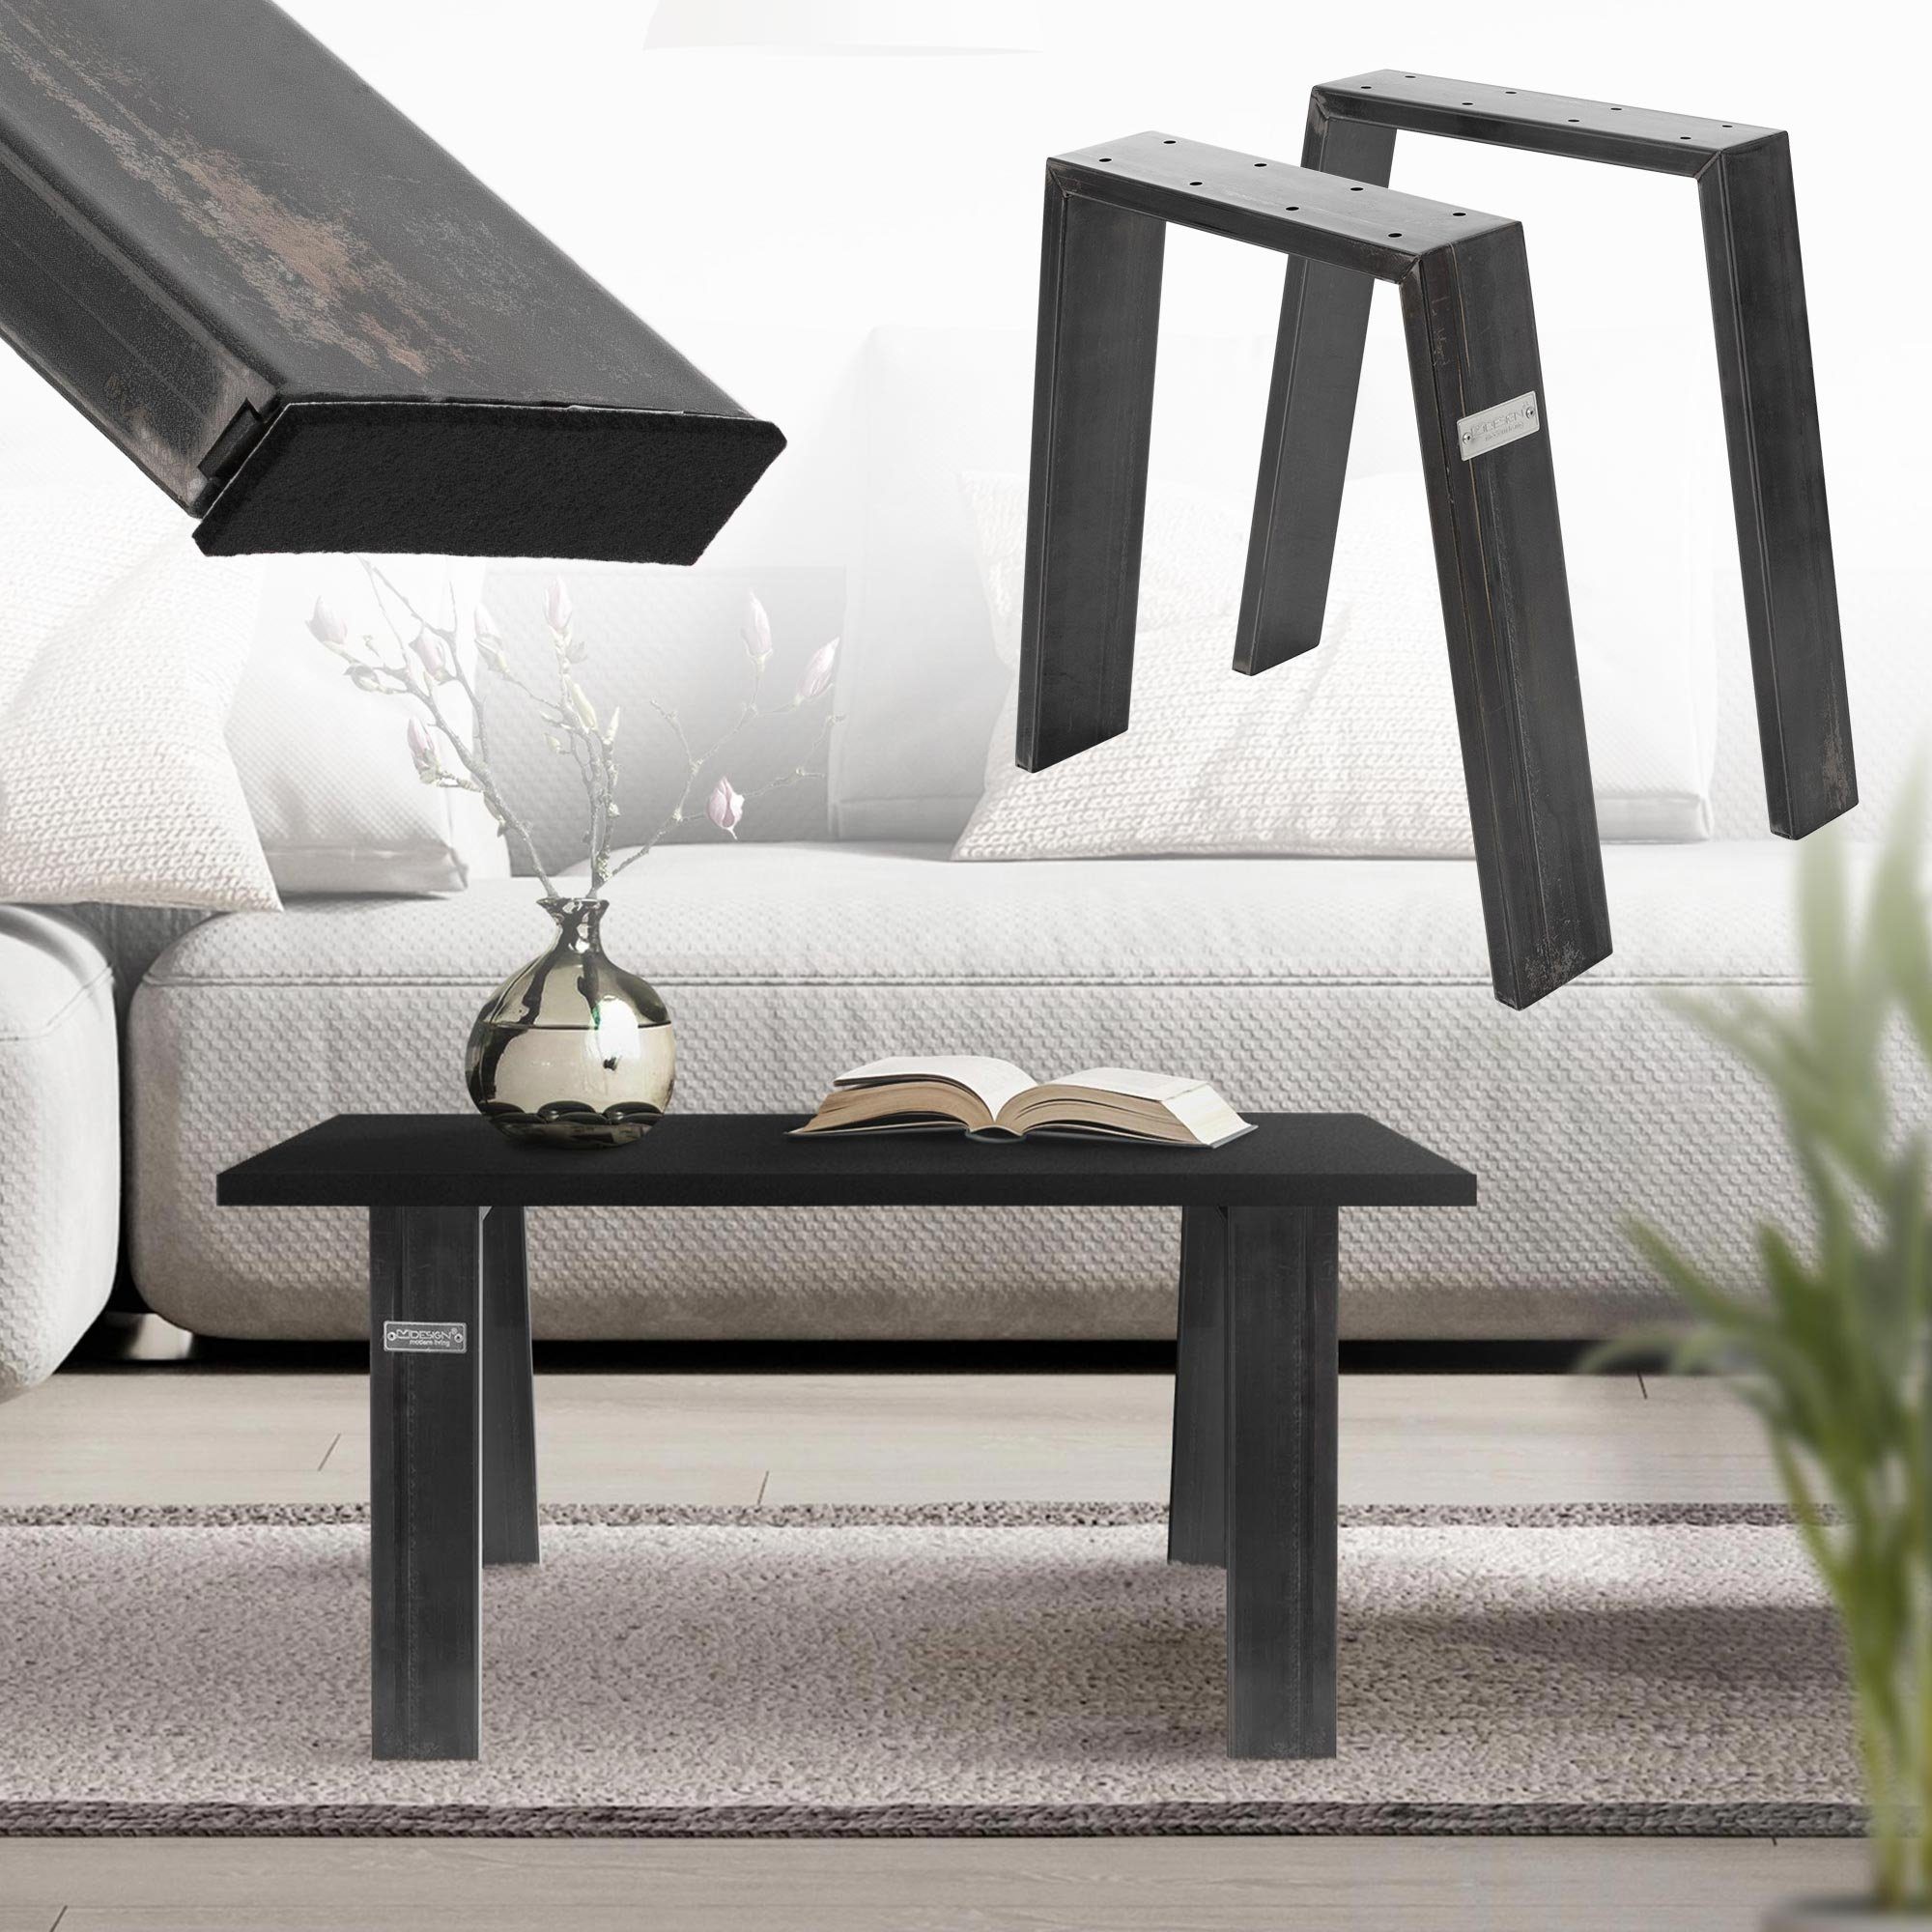 ML-DESIGN Tischbein Tischgestell Loft 2er Set aus Stahl Industriedesign U-Form, Tischkufen 44x42 cm Industrial Profil 8x2cm Möbelfüße